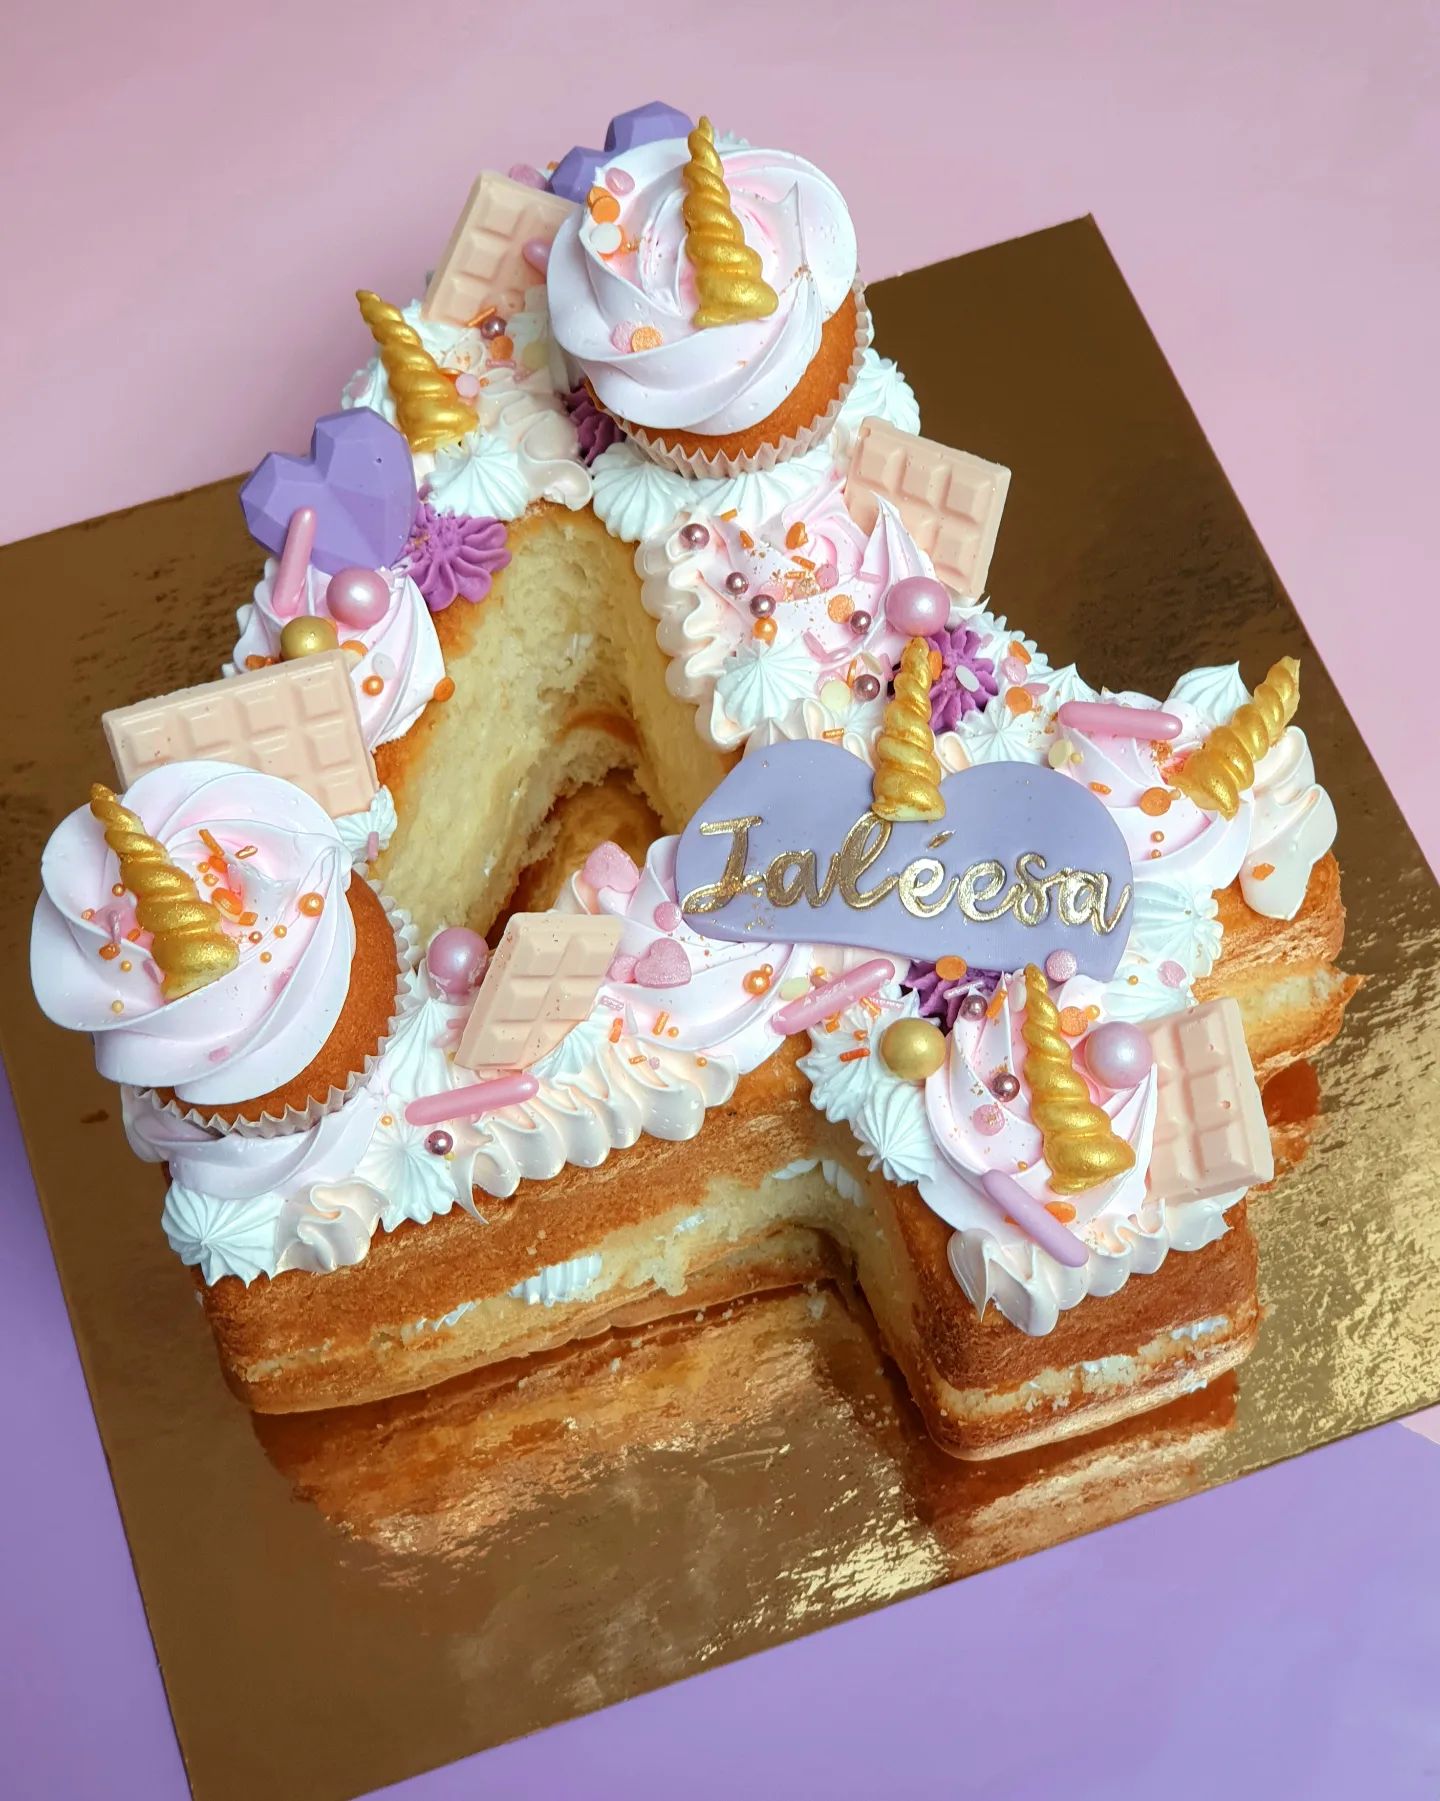 Cijfertaart Ik heb weer een leuke cijfertaart mogen maken, en stay tuned...leuke zeemeermin sweets in het verschiet .... . . . .#birthday #birthdaycake #cakecakecake #numbercake #buttercream #pink #pastels #cake #cakemaker #numbercakes #cakedecorating #instacake #instacakes #baker #bake #girlscake #rainbow #buttercreamcake #instabake #cakesdaily #caketrends #cakeinspo #cakeinspiration #pastel #pastelcake #pinkcake #birthdaycake #pastelaesthetic #cakephotography #cutecake